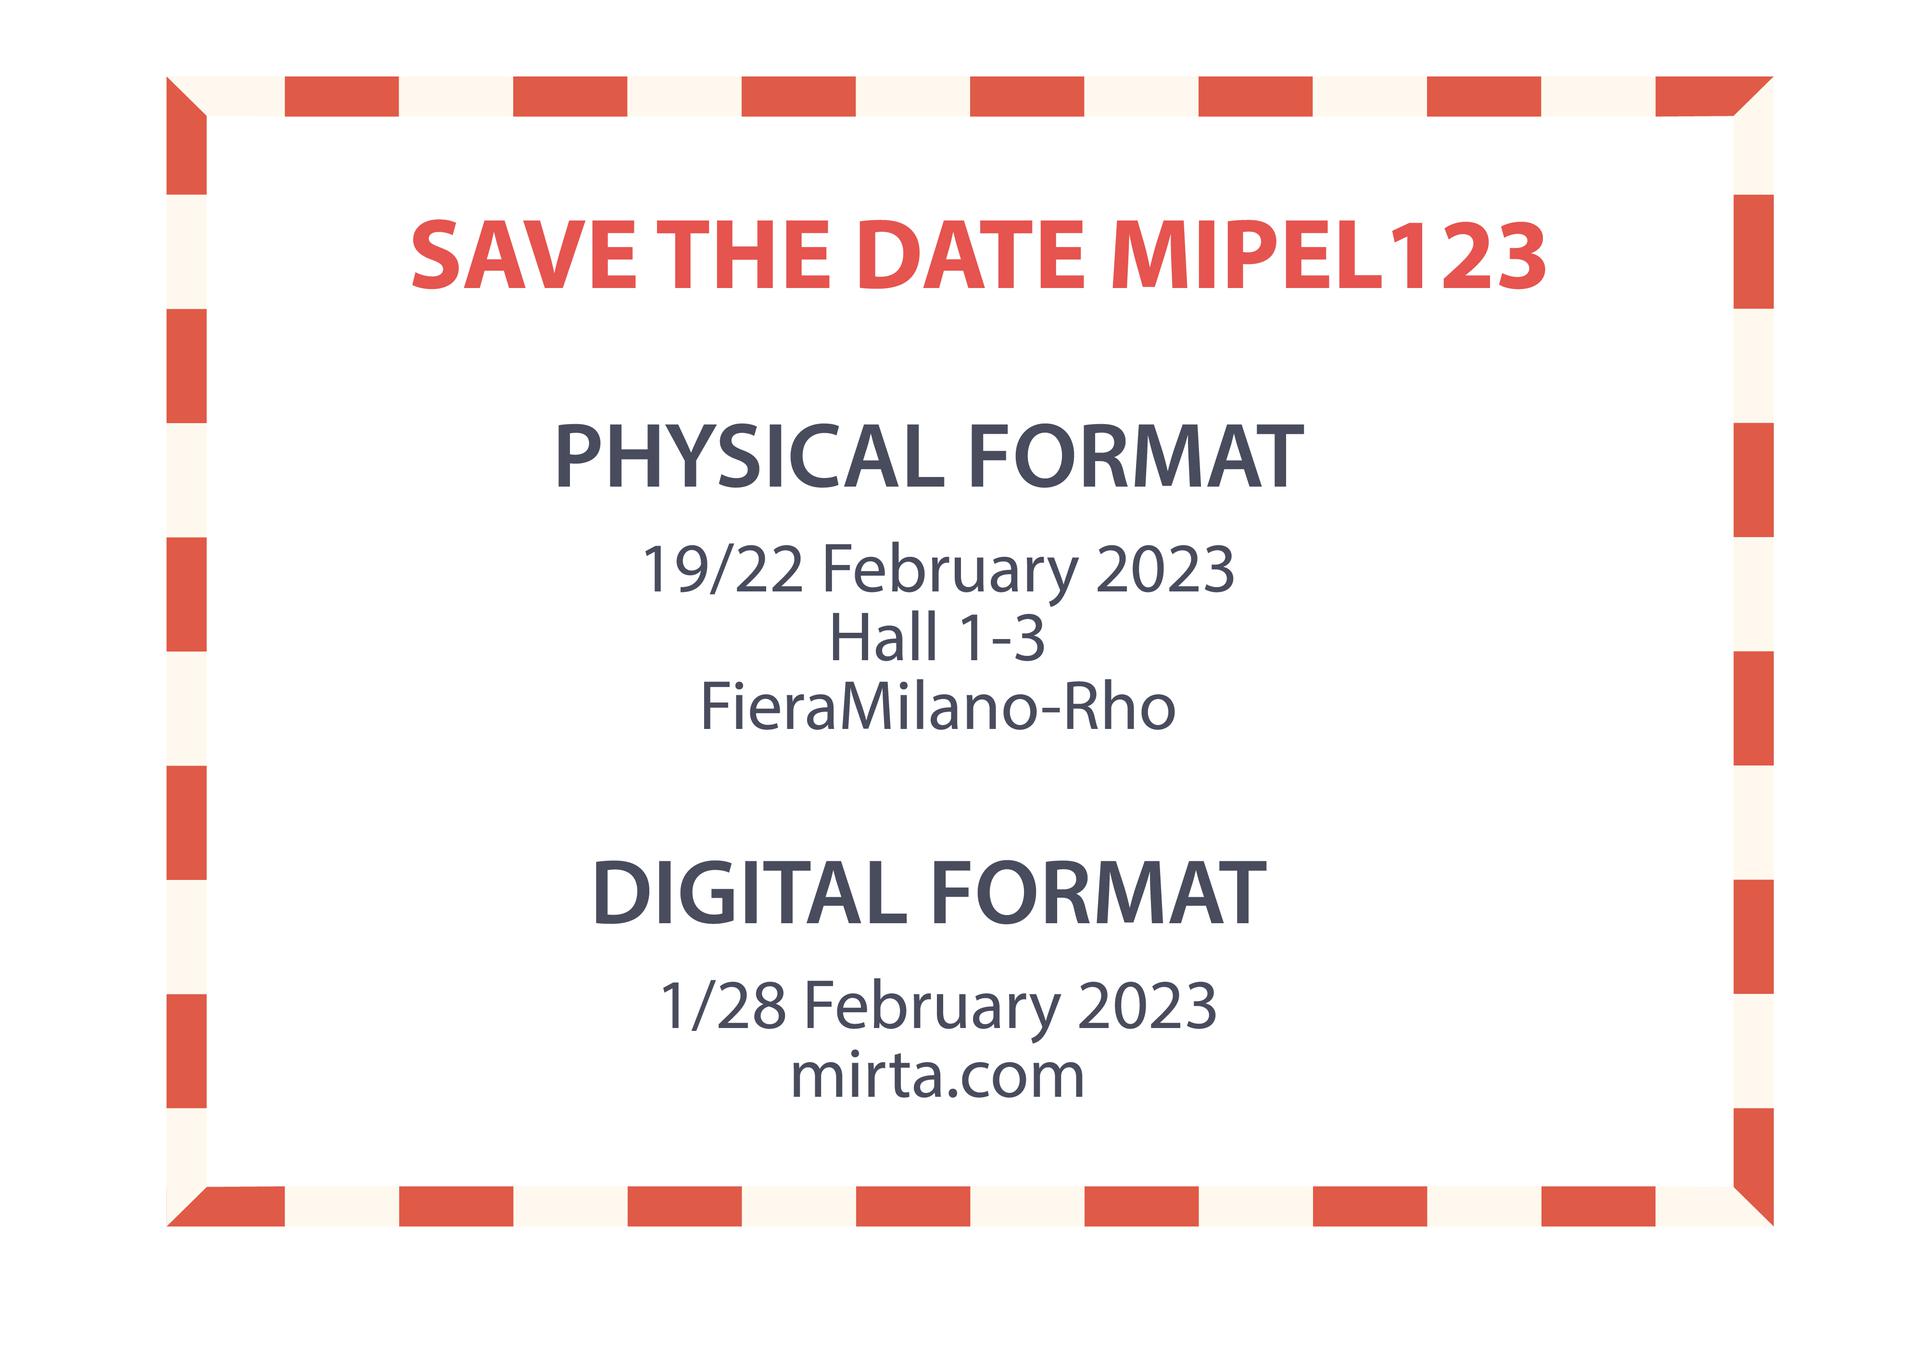 MIPEL123: 19/22 February 2023 in the HALL 1-3 (FieraMilano Rho) | 1/28 February 2023 on mirta.com